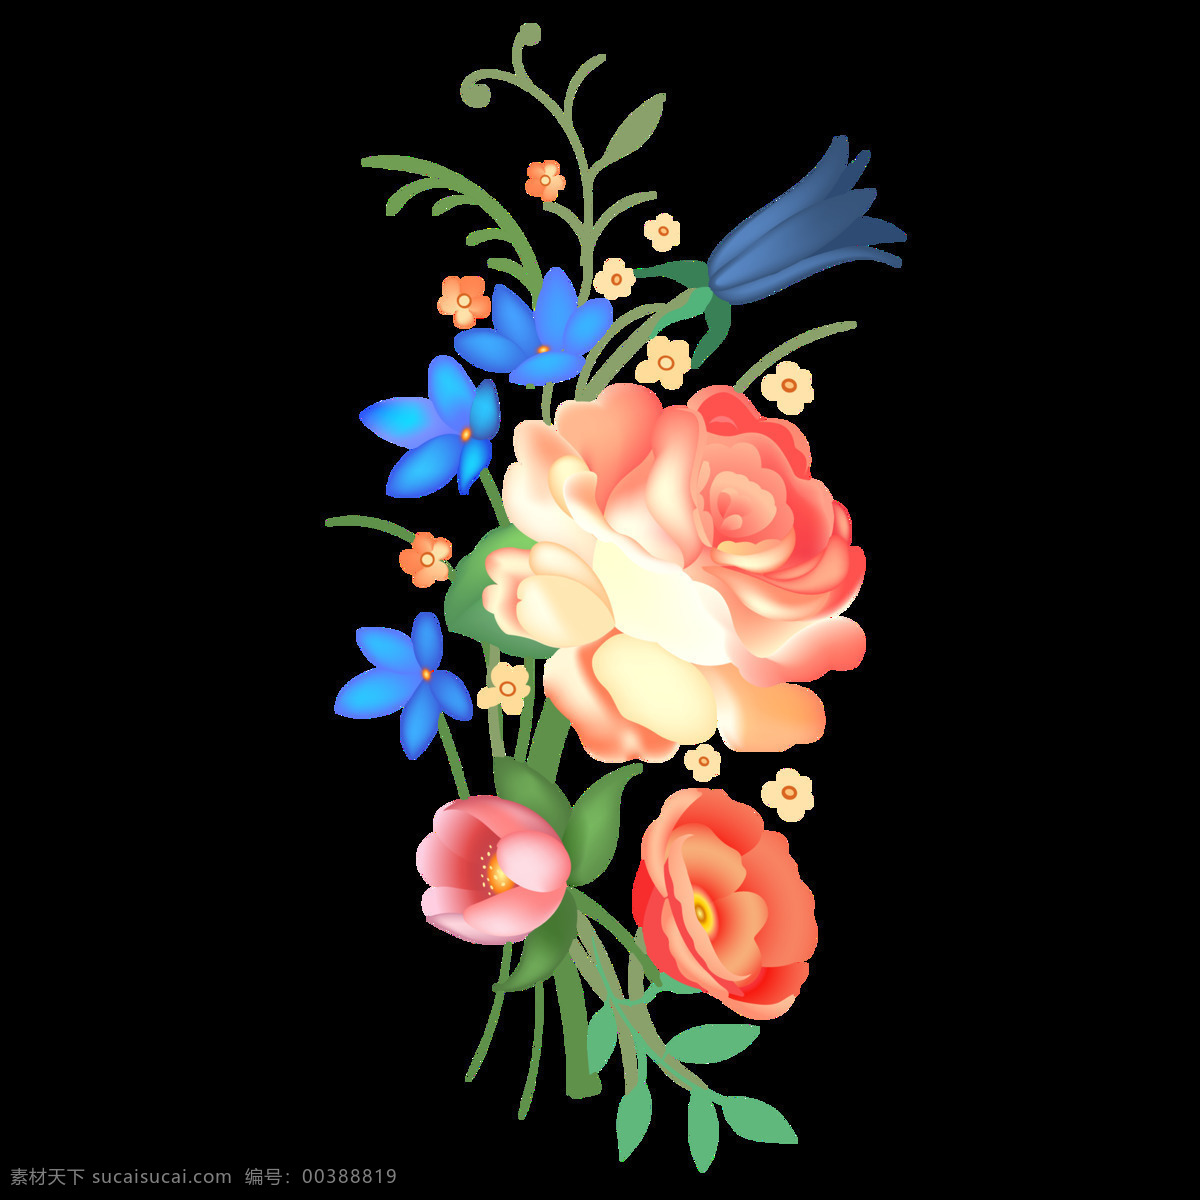 美丽 鲜花 透明 装饰 抠图专用 设计素材